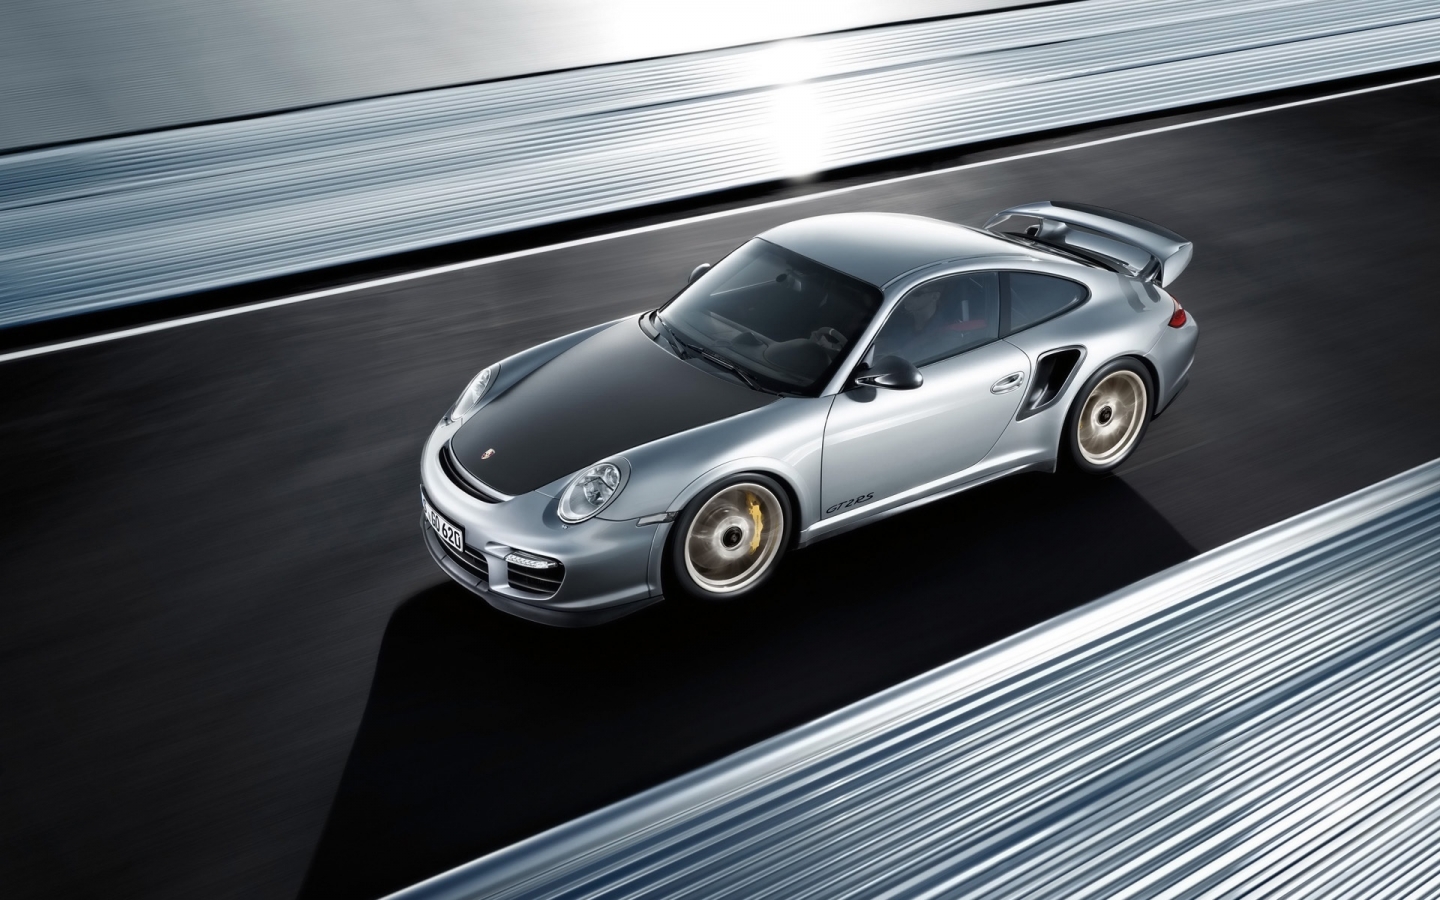 Porsche 911 GT2 RS 2011 for 1440 x 900 widescreen resolution